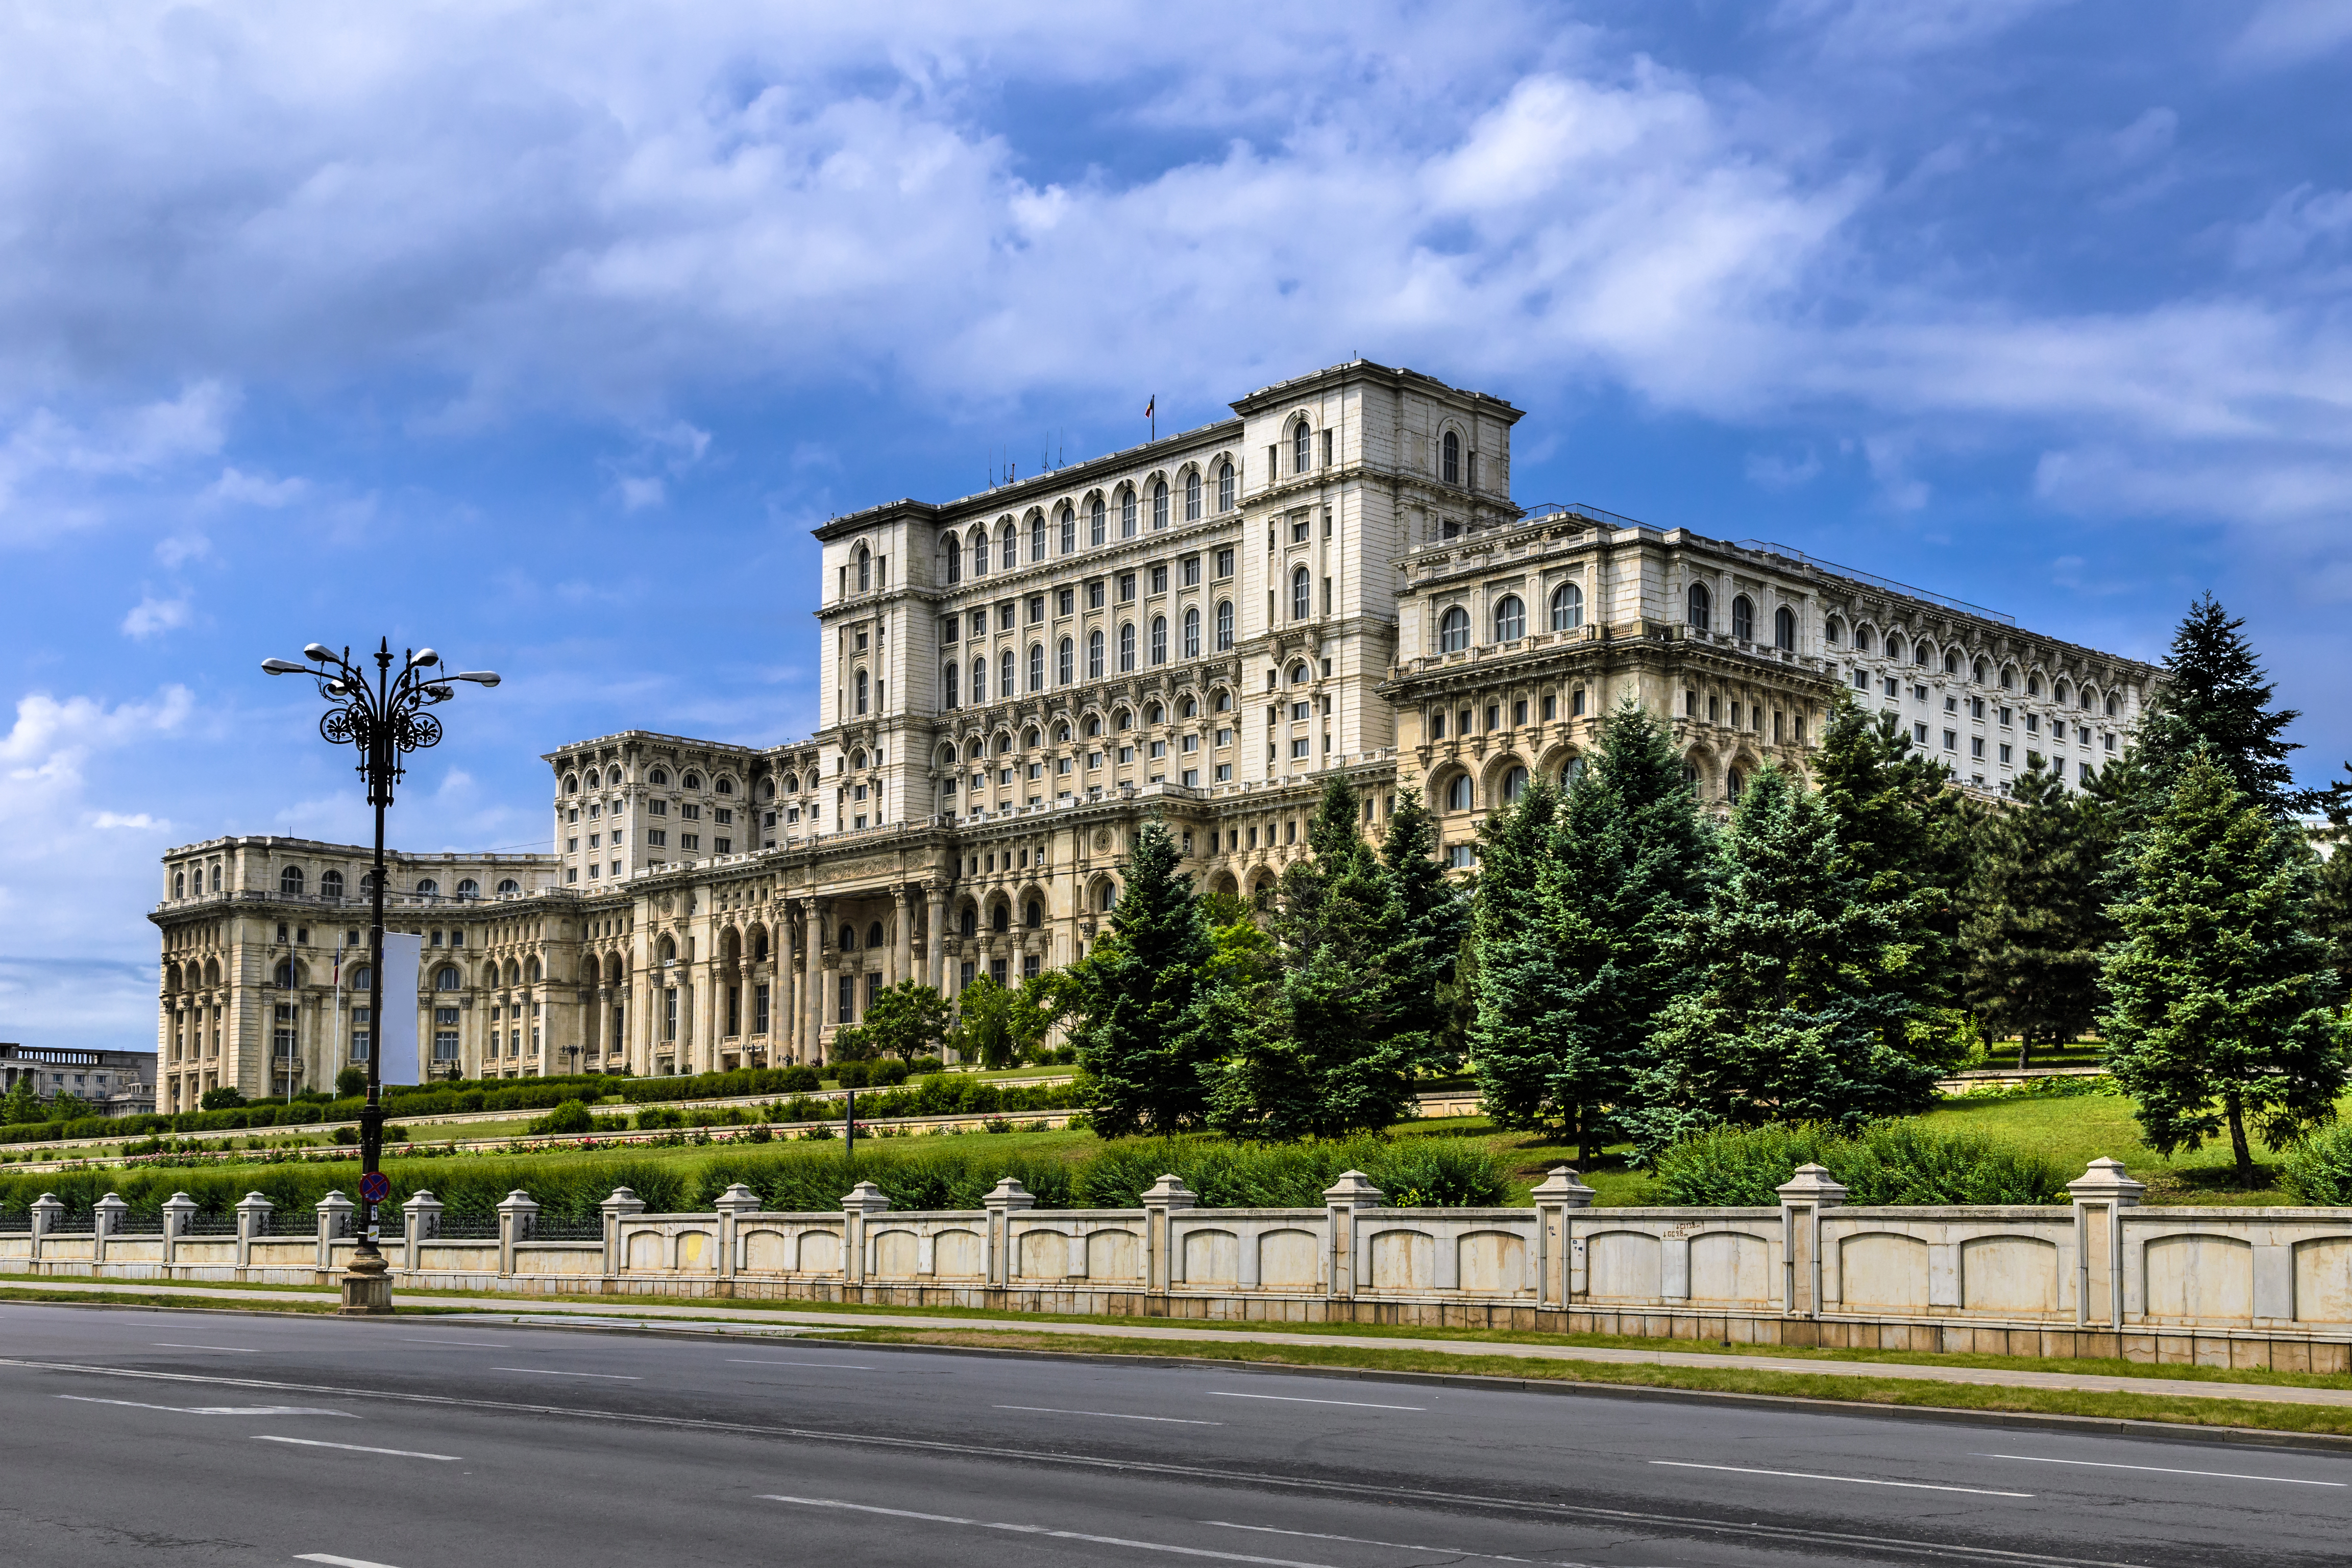  Здание правительства Румынии как символ получения гражданства Румынии